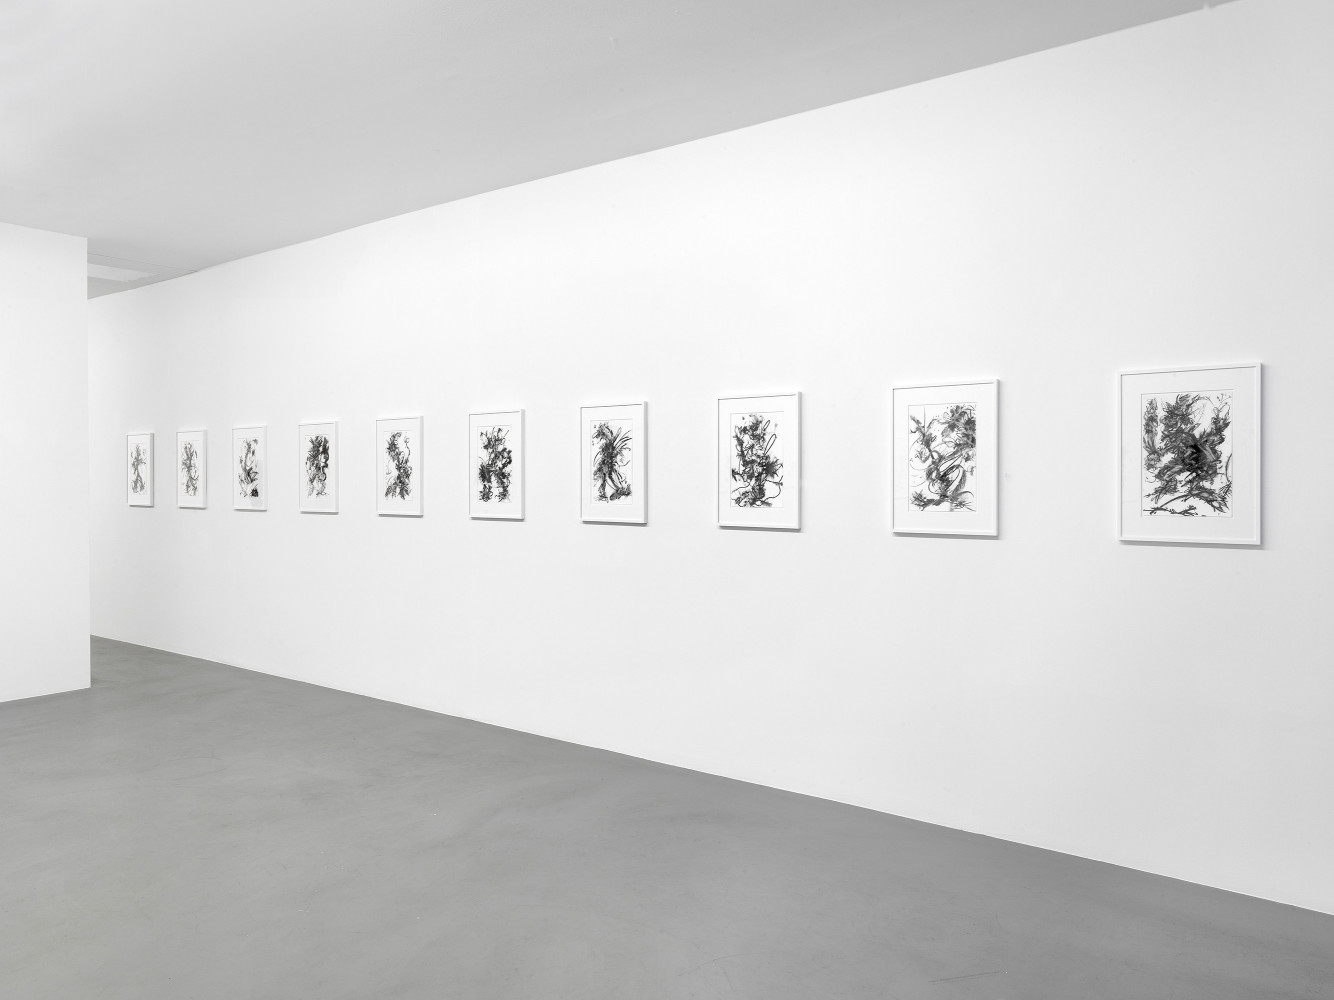 Fiona Rae, ‘Zeichnungen’, Installation view, Buchmann Box, 2014